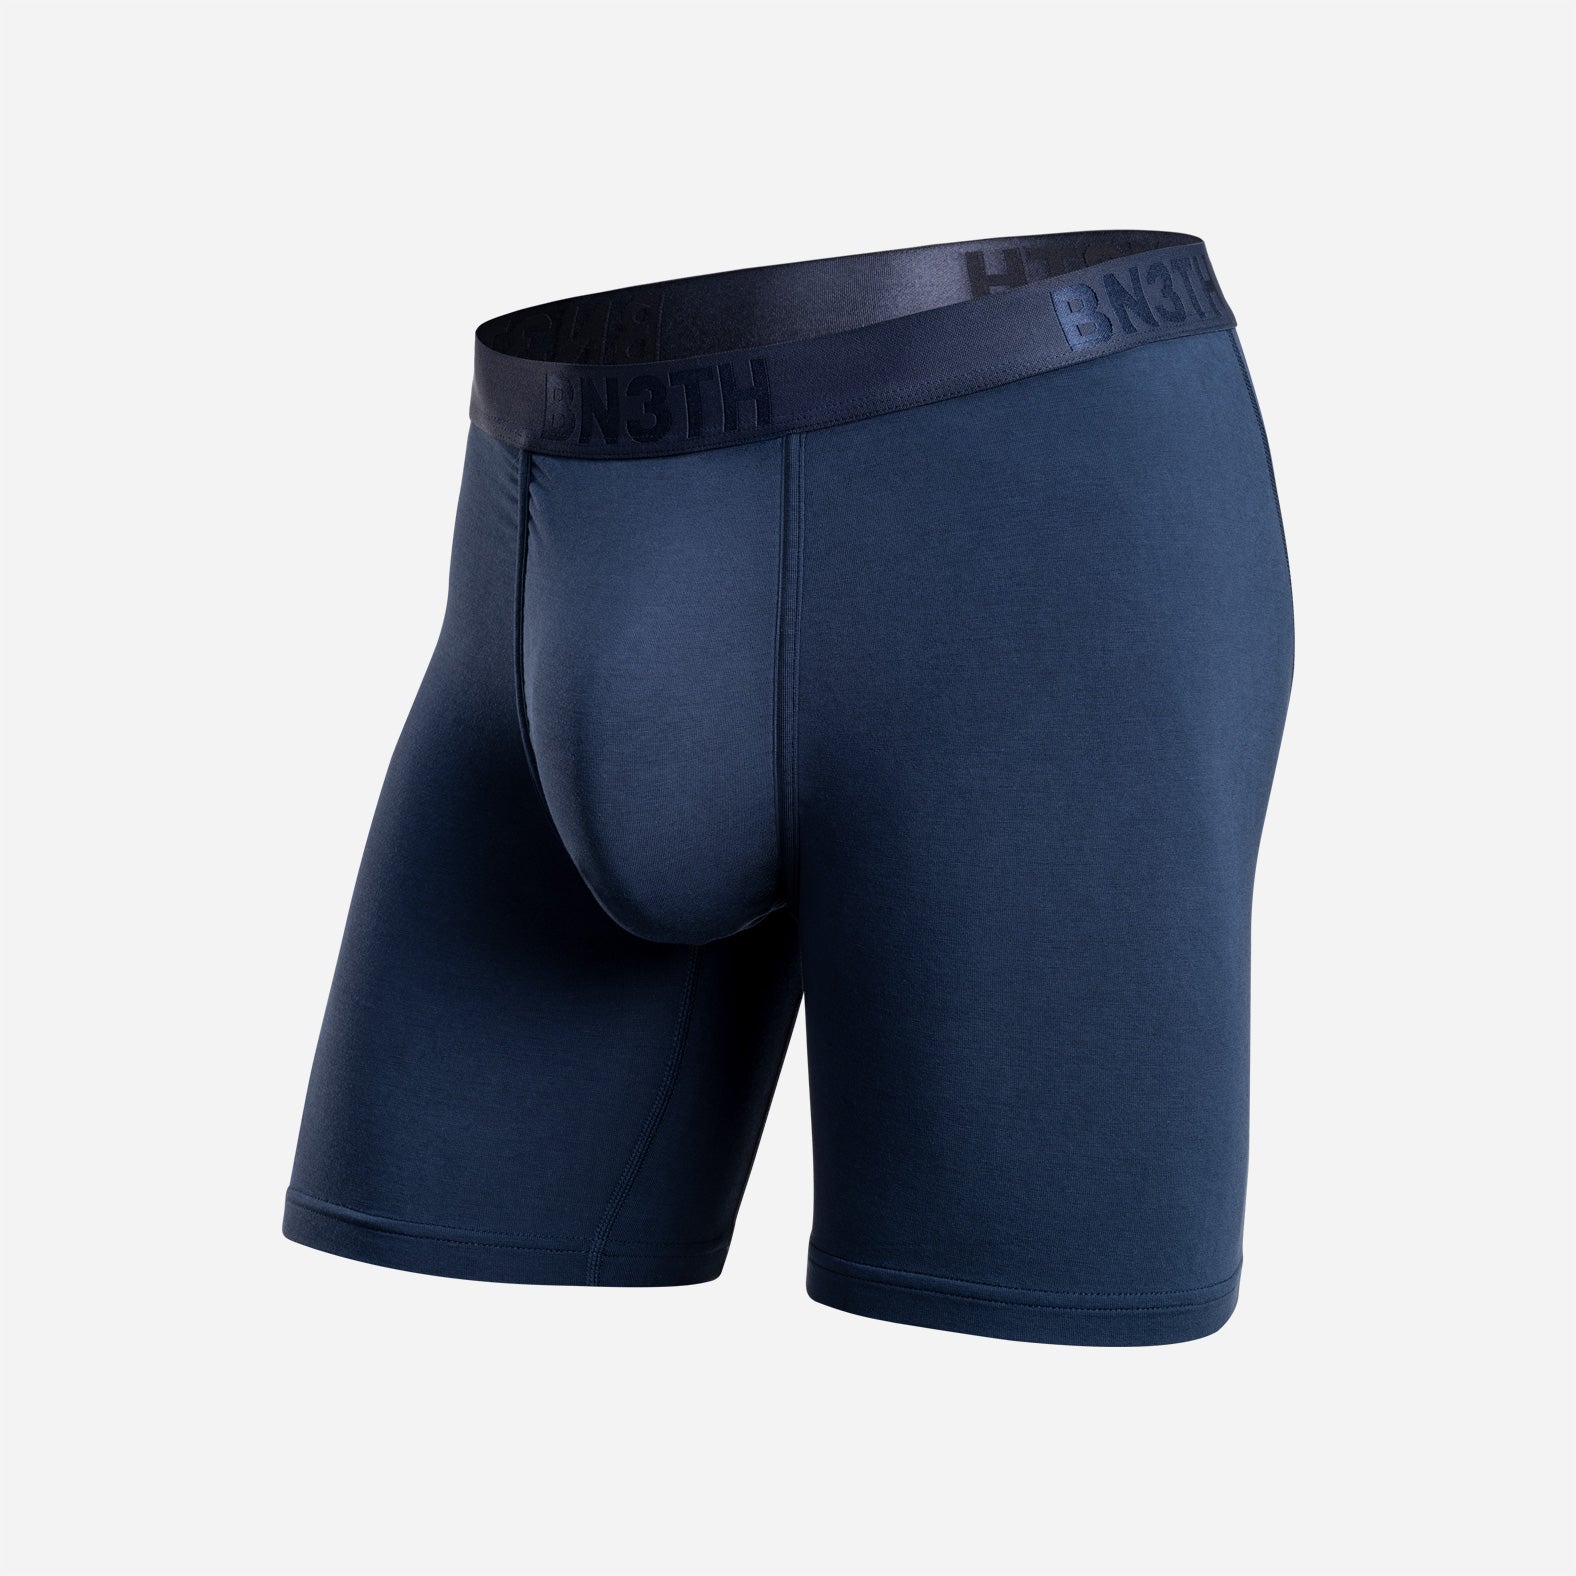 Brief: | Boxer BN3TH – Navy Classic Underwear